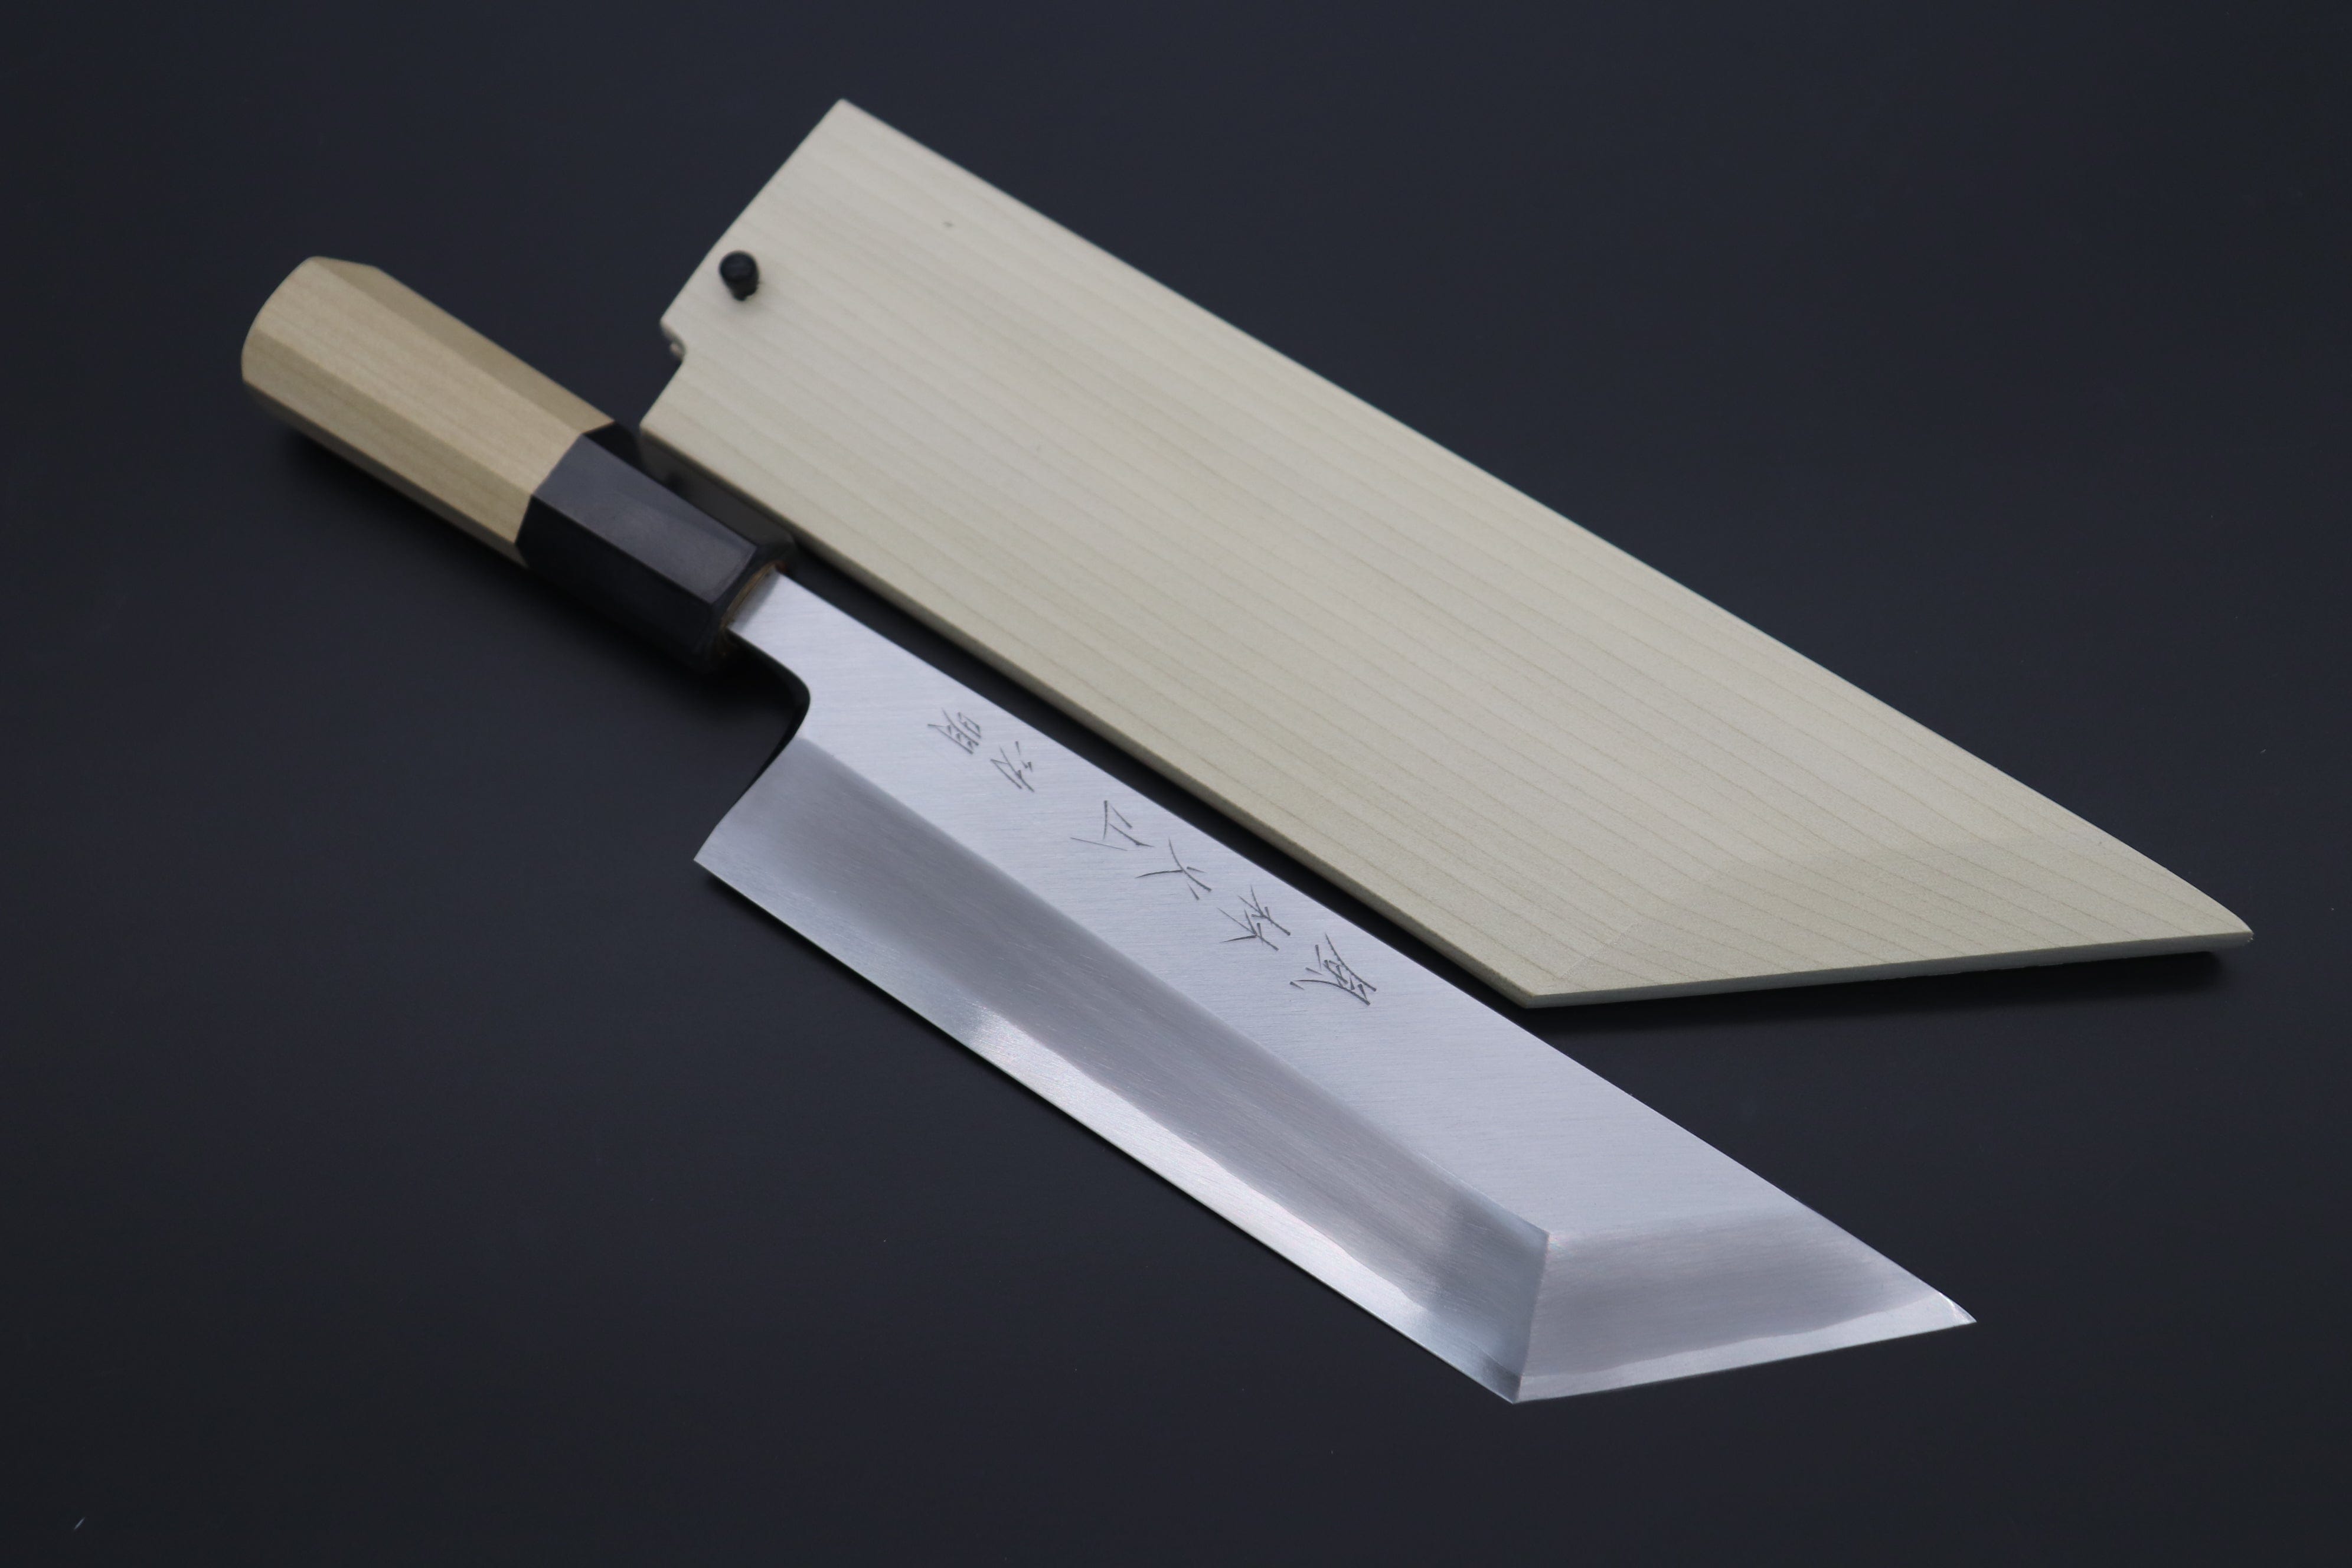 https://japanesechefsknife.com/cdn/shop/files/fu-rin-ka-zan-fu-rin-ka-zan-limited-fso-88-hon-kasumi-gingami-no-3-eel-knife-unagi-saki-edo-style-7-inch-43220327399707.jpg?v=1697510374